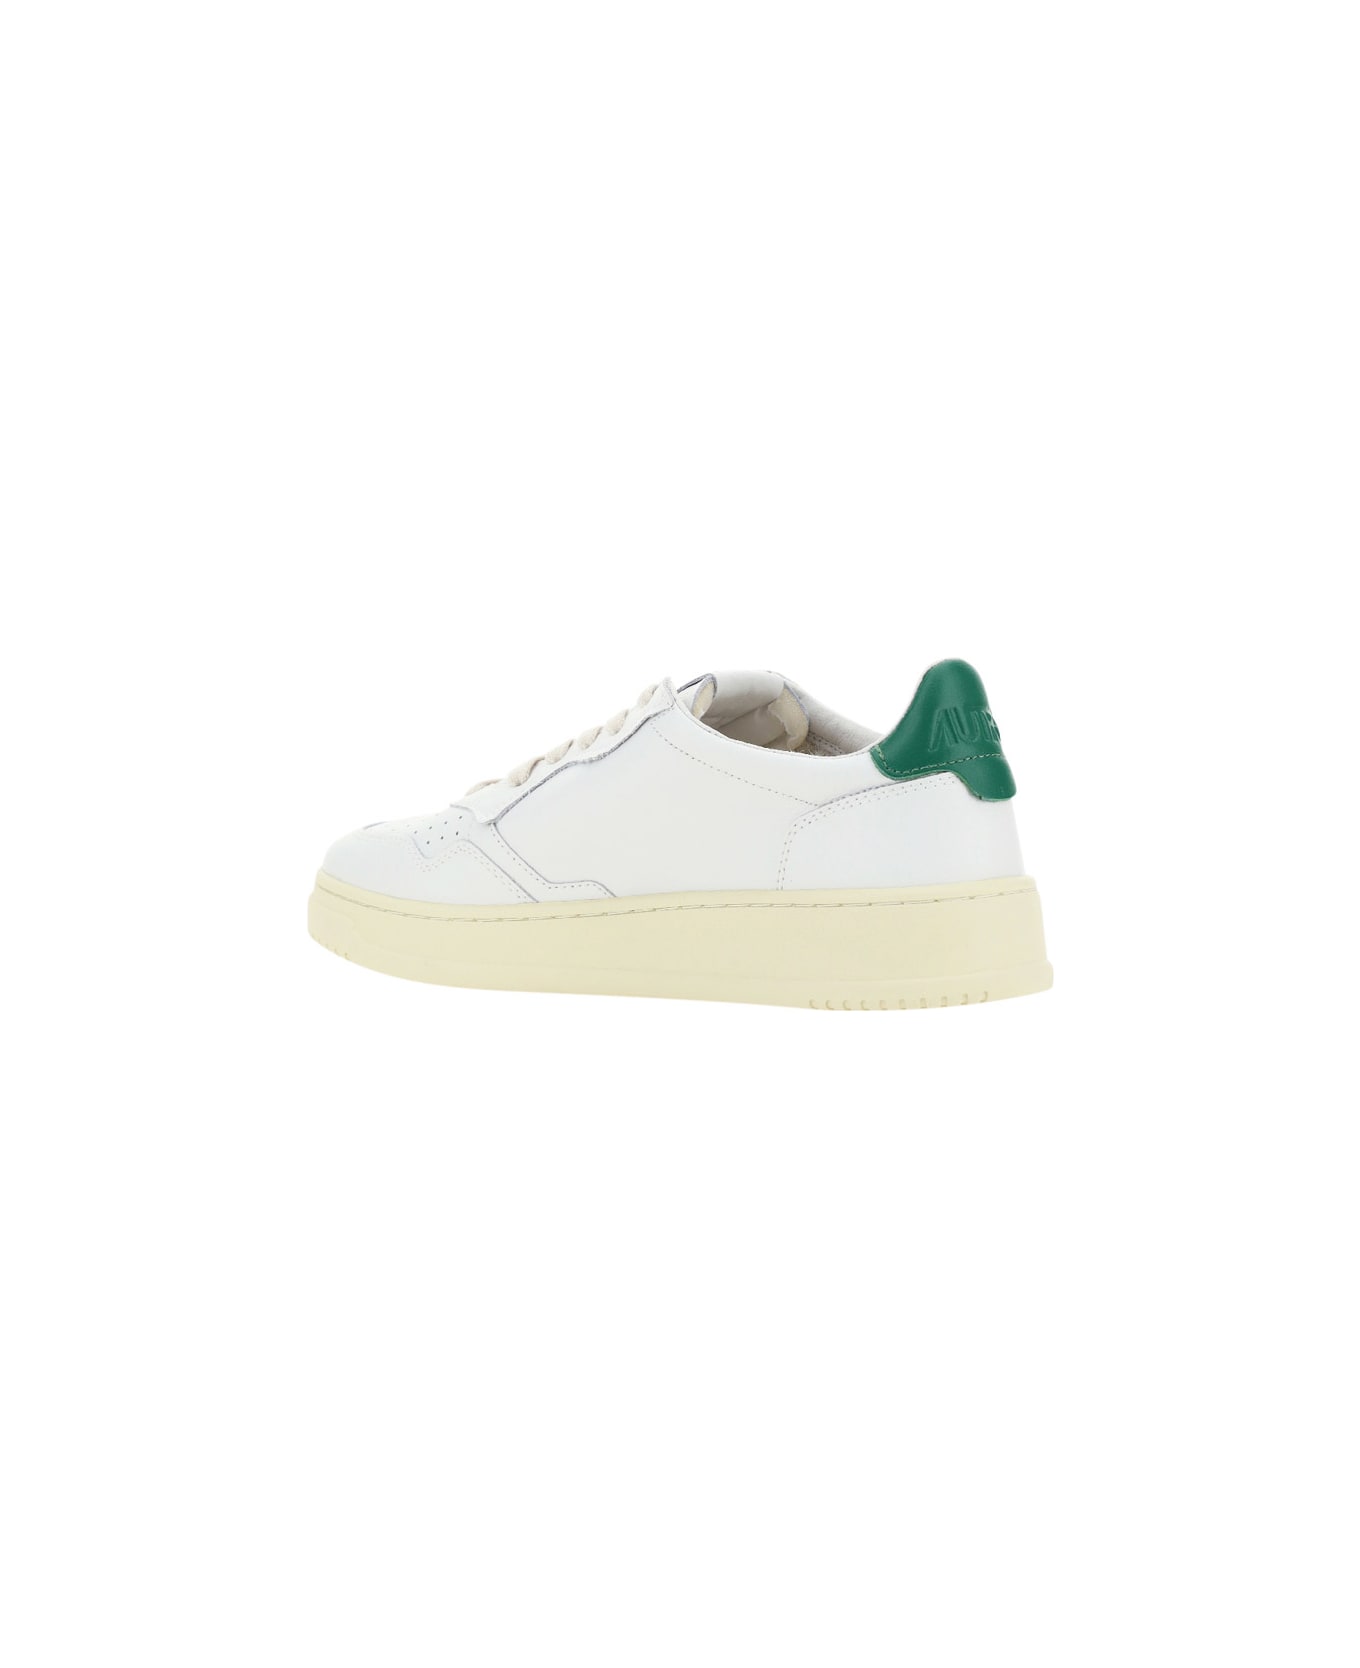 Autry Low 01 Sneakers - Bianco/Verde